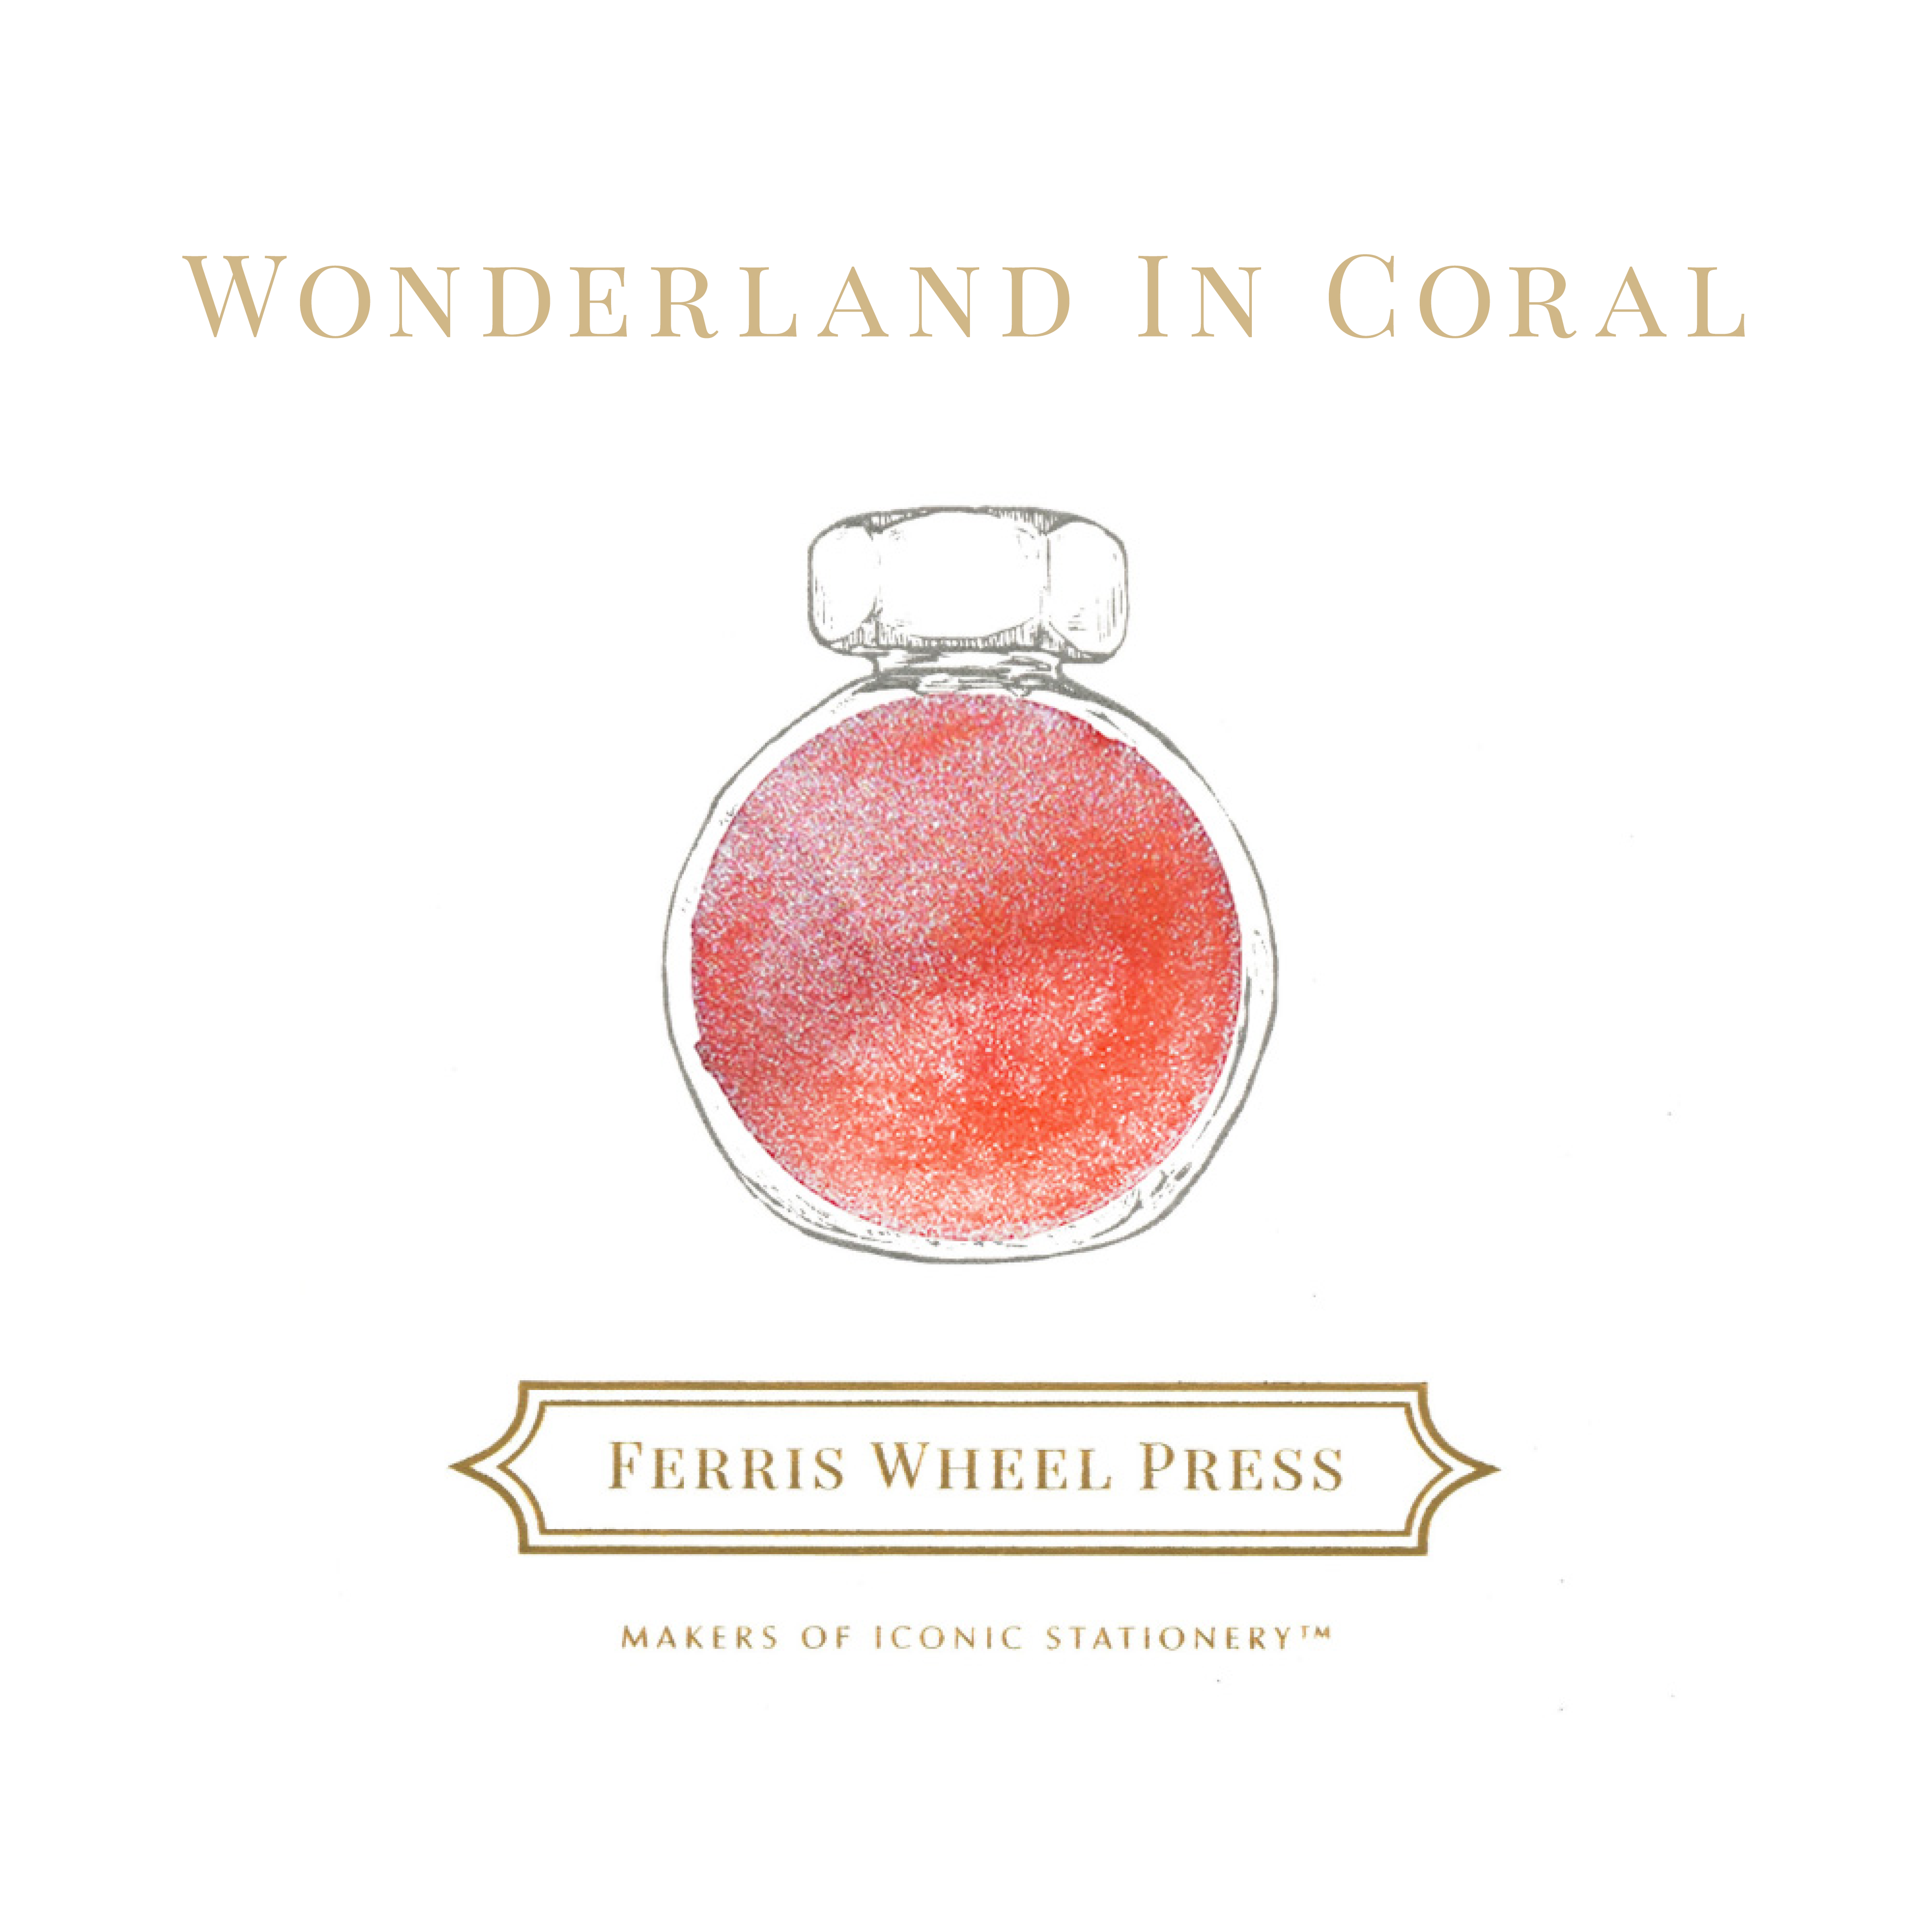 Tinta para pluma estilográfica de 38 ml - País de las maravillas en coral